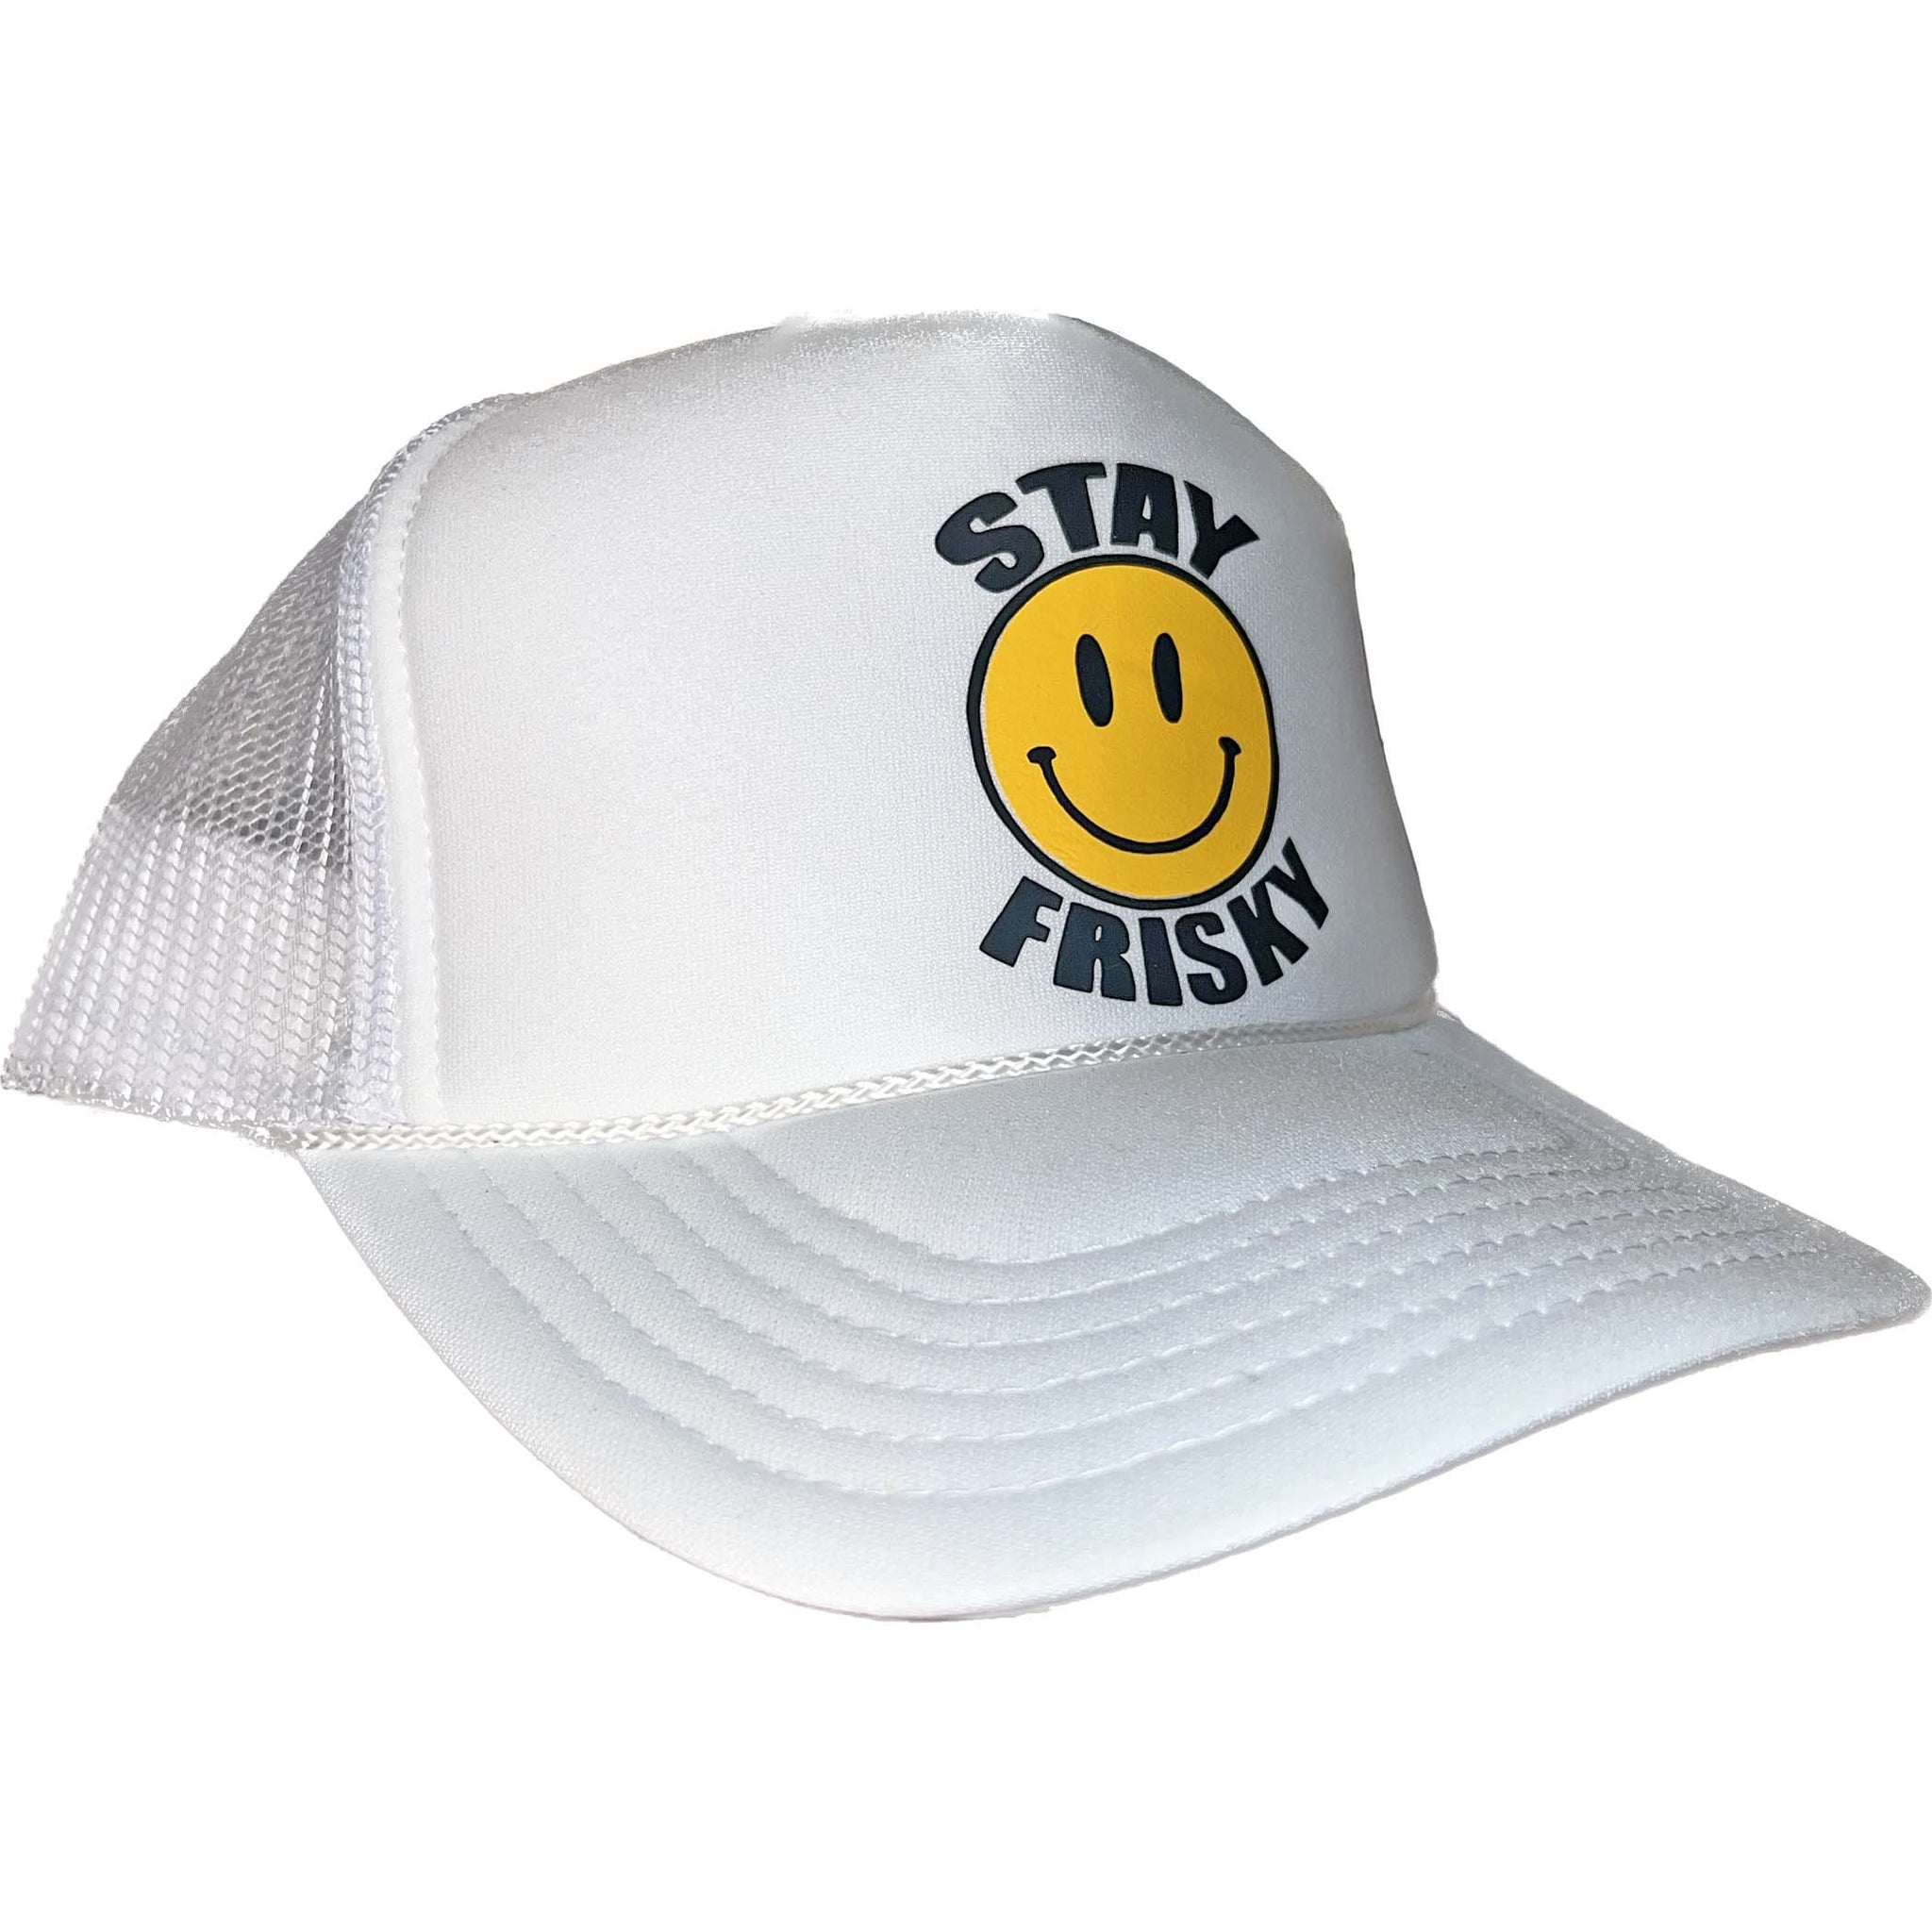 STAY FRISKY TRUCKER HAT